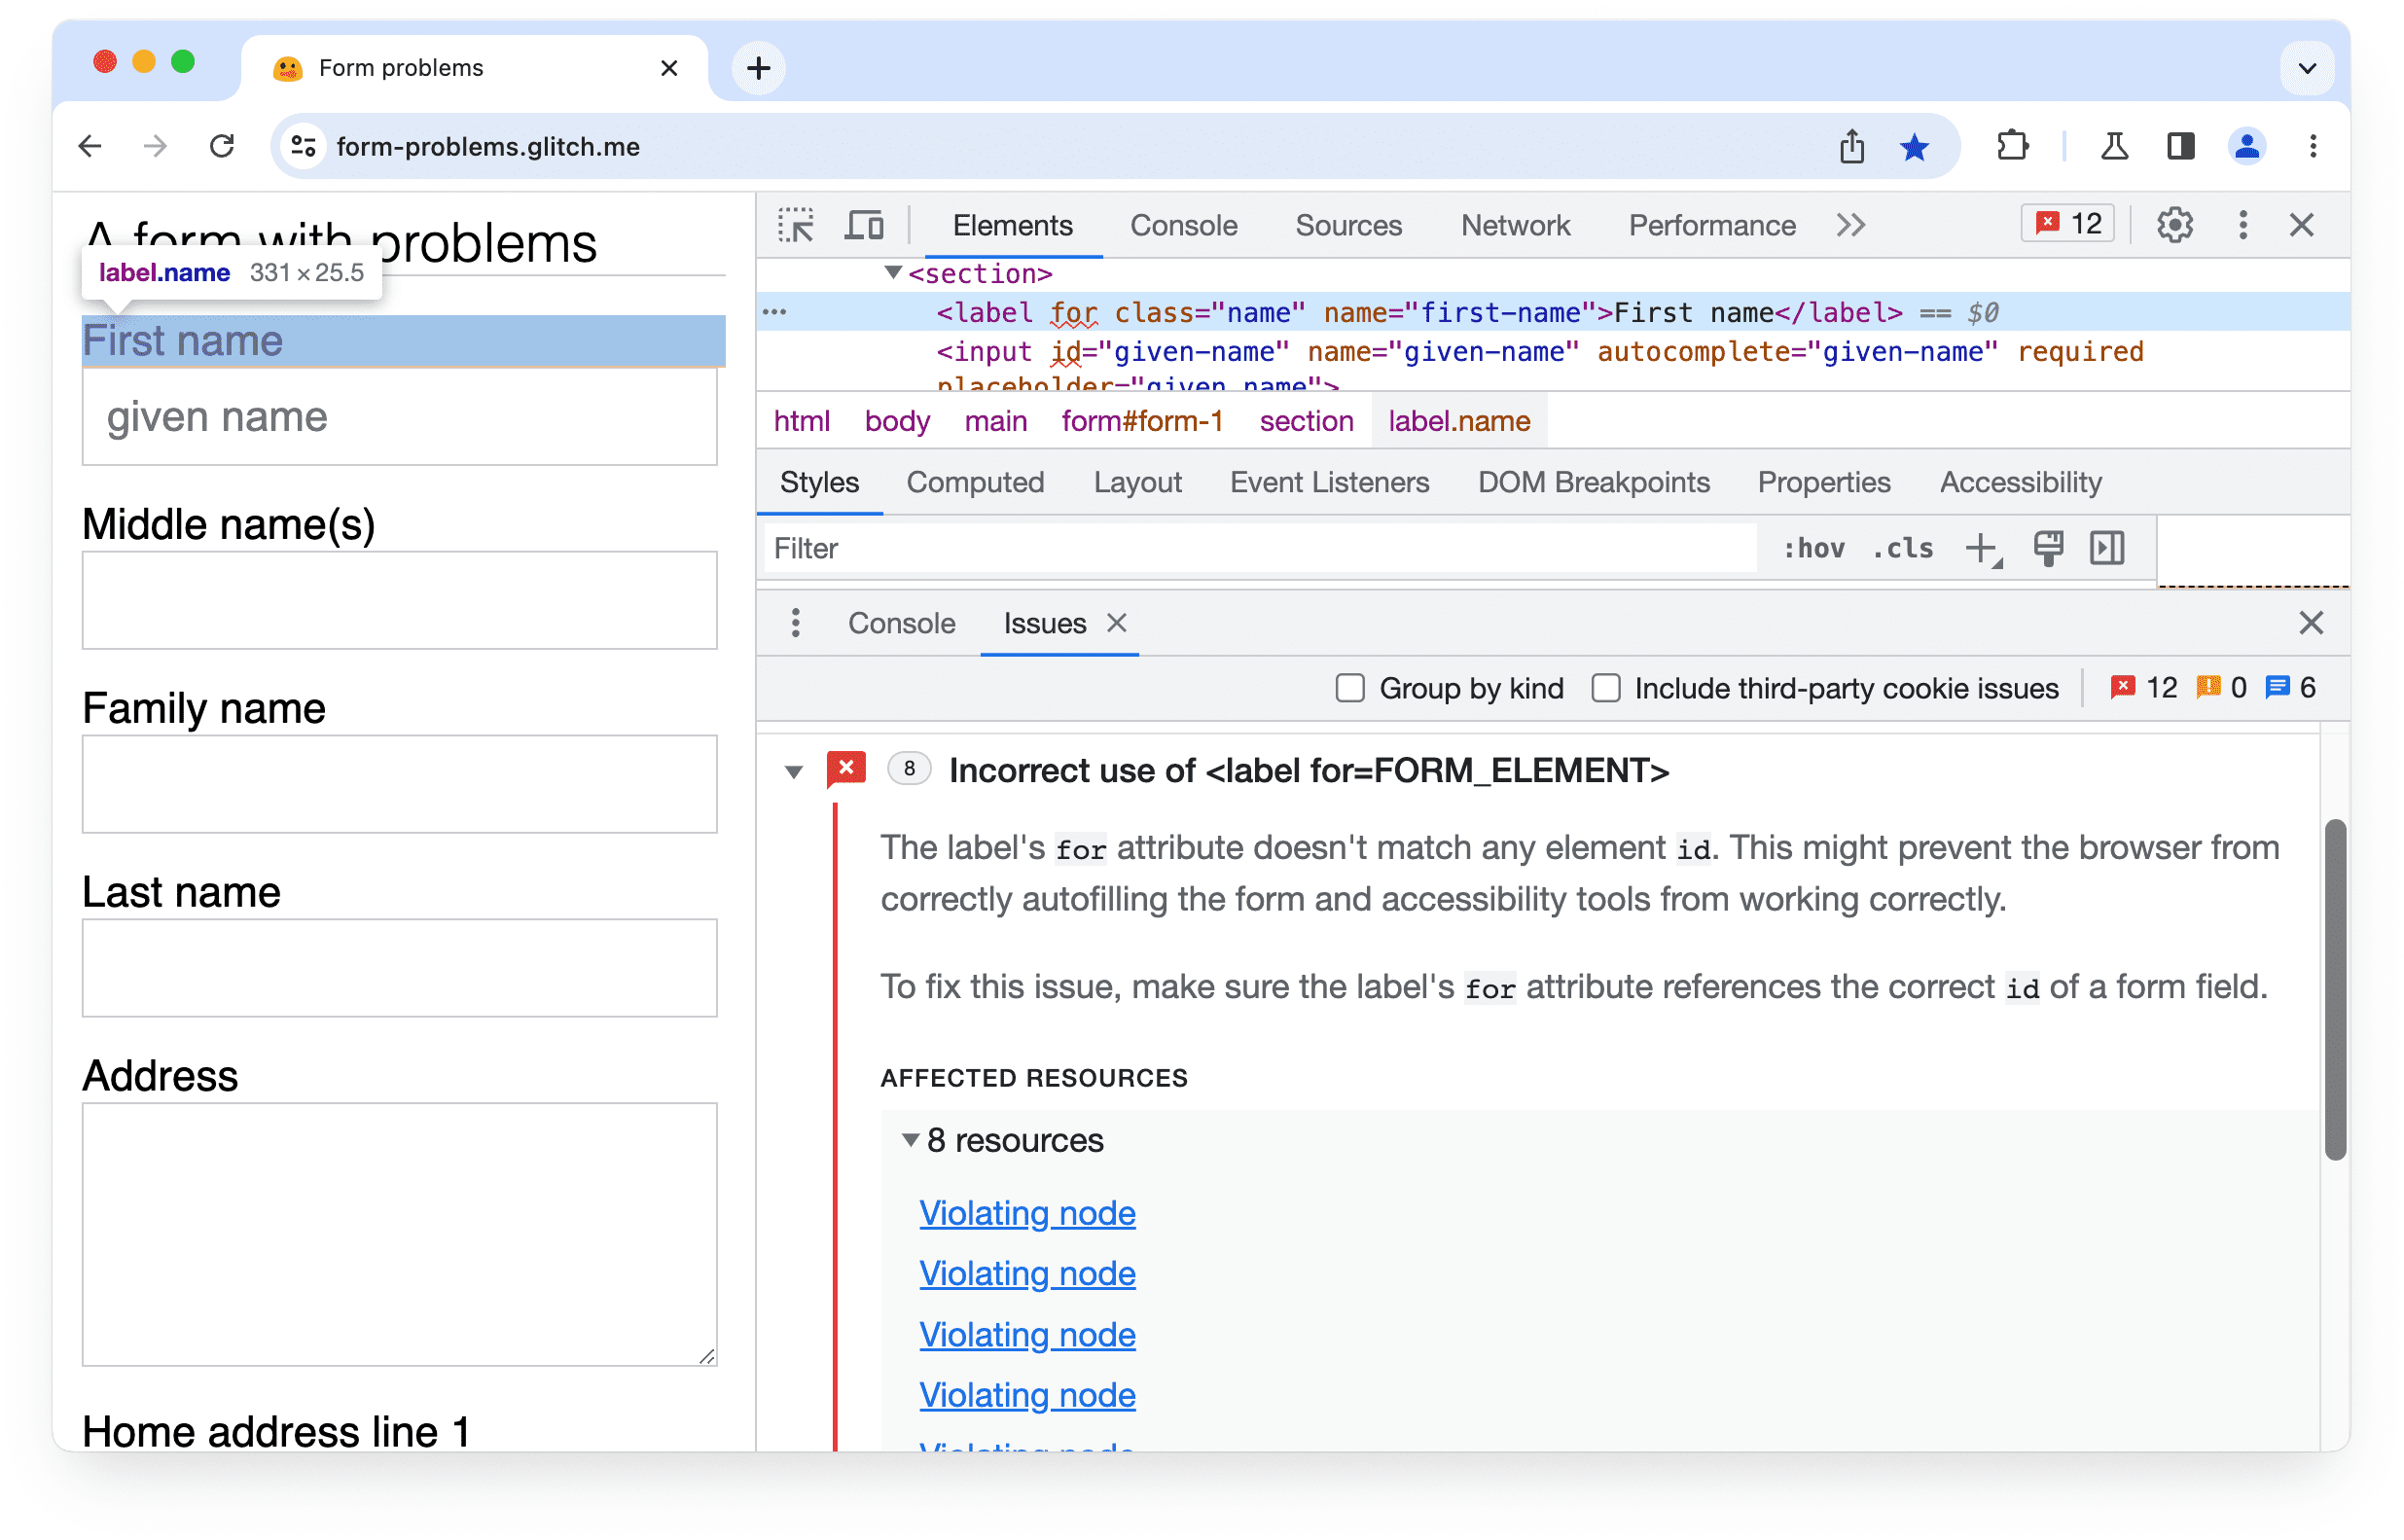 ขยายปัญหาใน
Chrome DevTools: การใช้ป้ายกำกับสำหรับแอตทริบิวต์ไม่ถูกต้อง